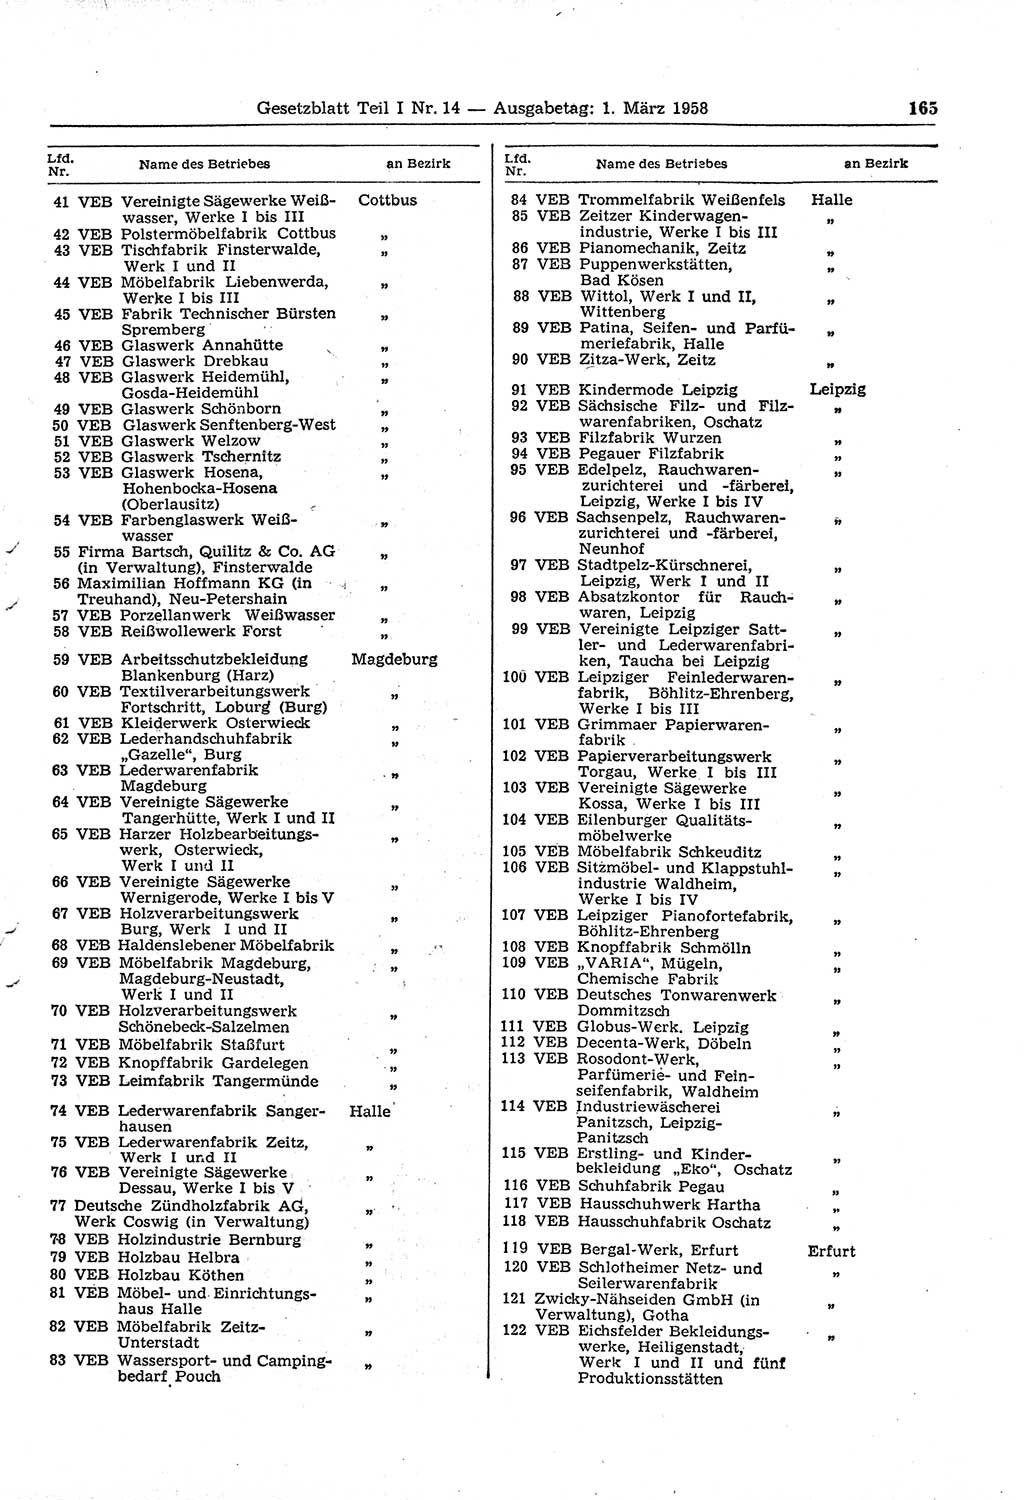 Gesetzblatt (GBl.) der Deutschen Demokratischen Republik (DDR) Teil Ⅰ 1958, Seite 165 (GBl. DDR Ⅰ 1958, S. 165)